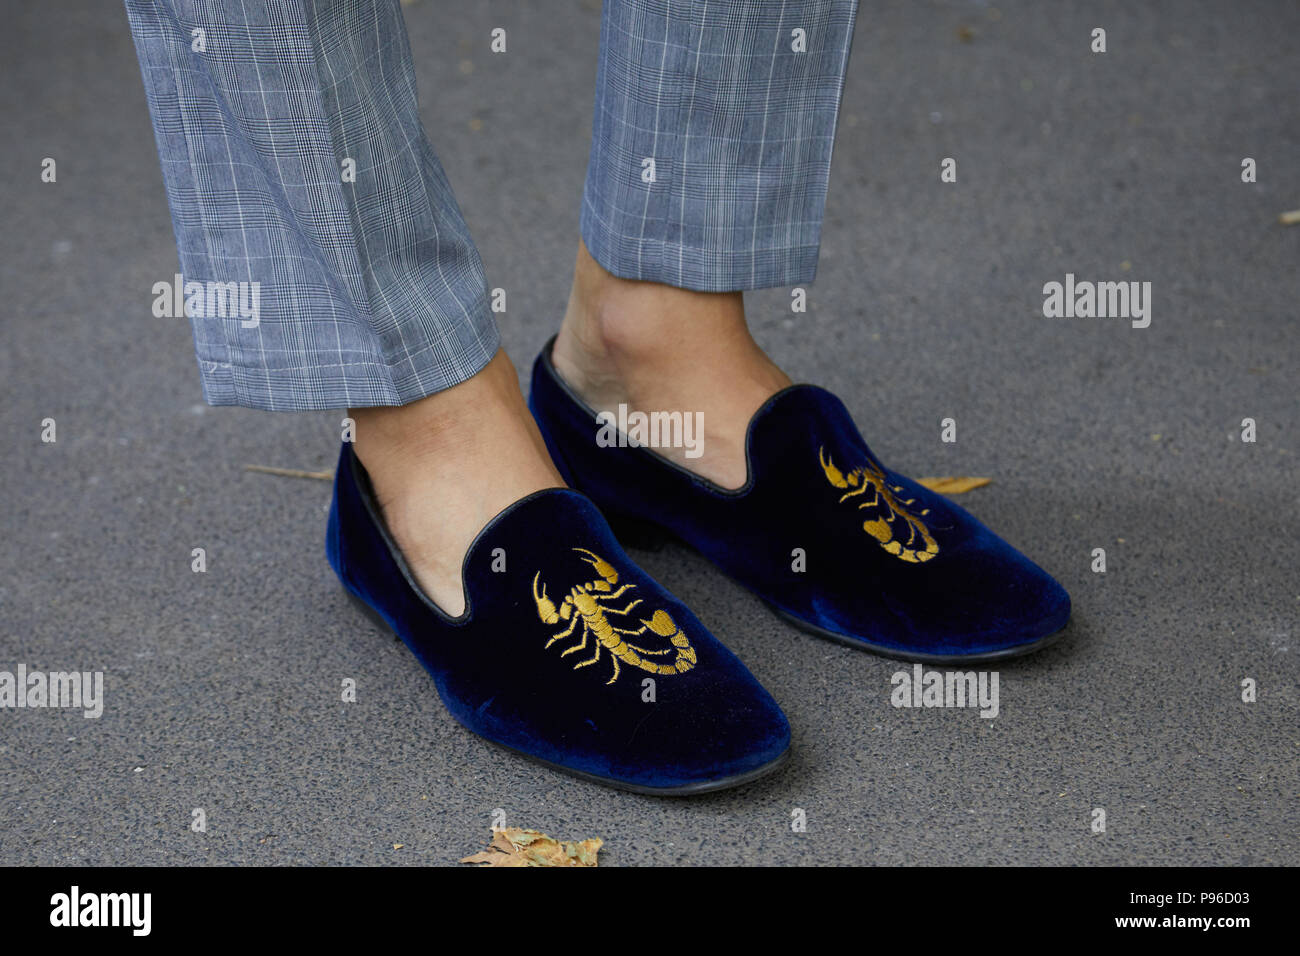 Milán - Hombre con zapatos de terciopelo azul golden scorpion diseño antes de Fendi